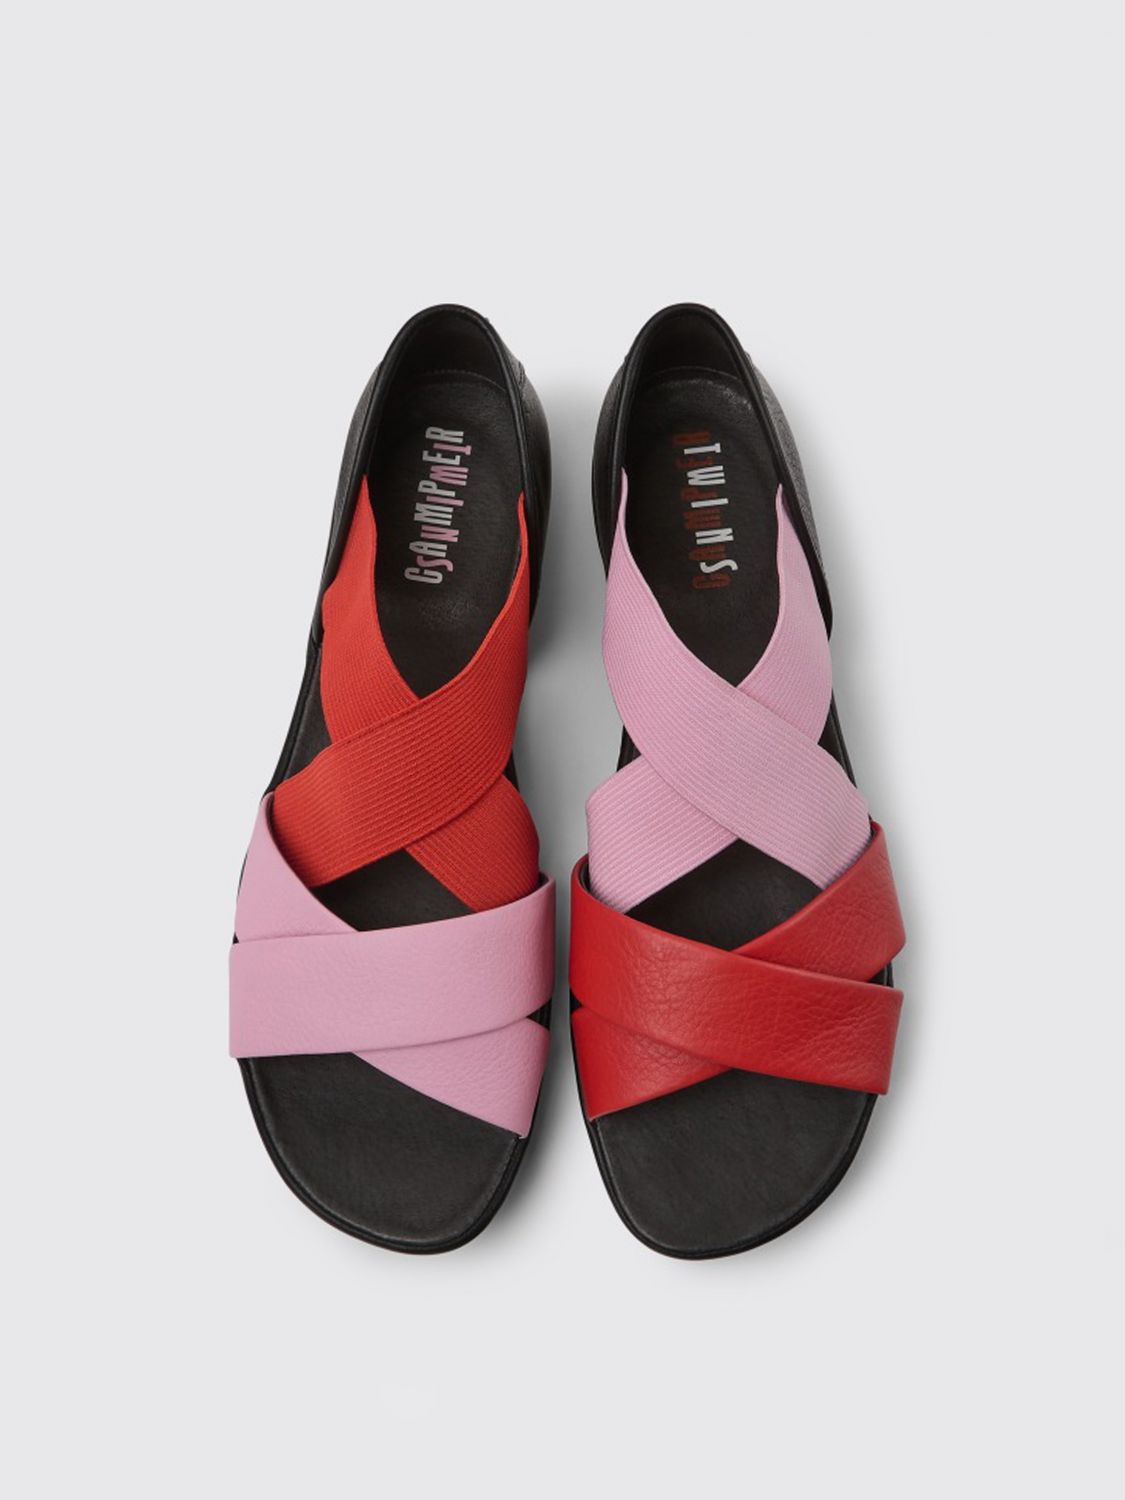 Burma lejr Odysseus Camper Outlet: Twins leather sandals - Multicolor | Camper flat sandals  K201367-003 TWINS online at GIGLIO.COM